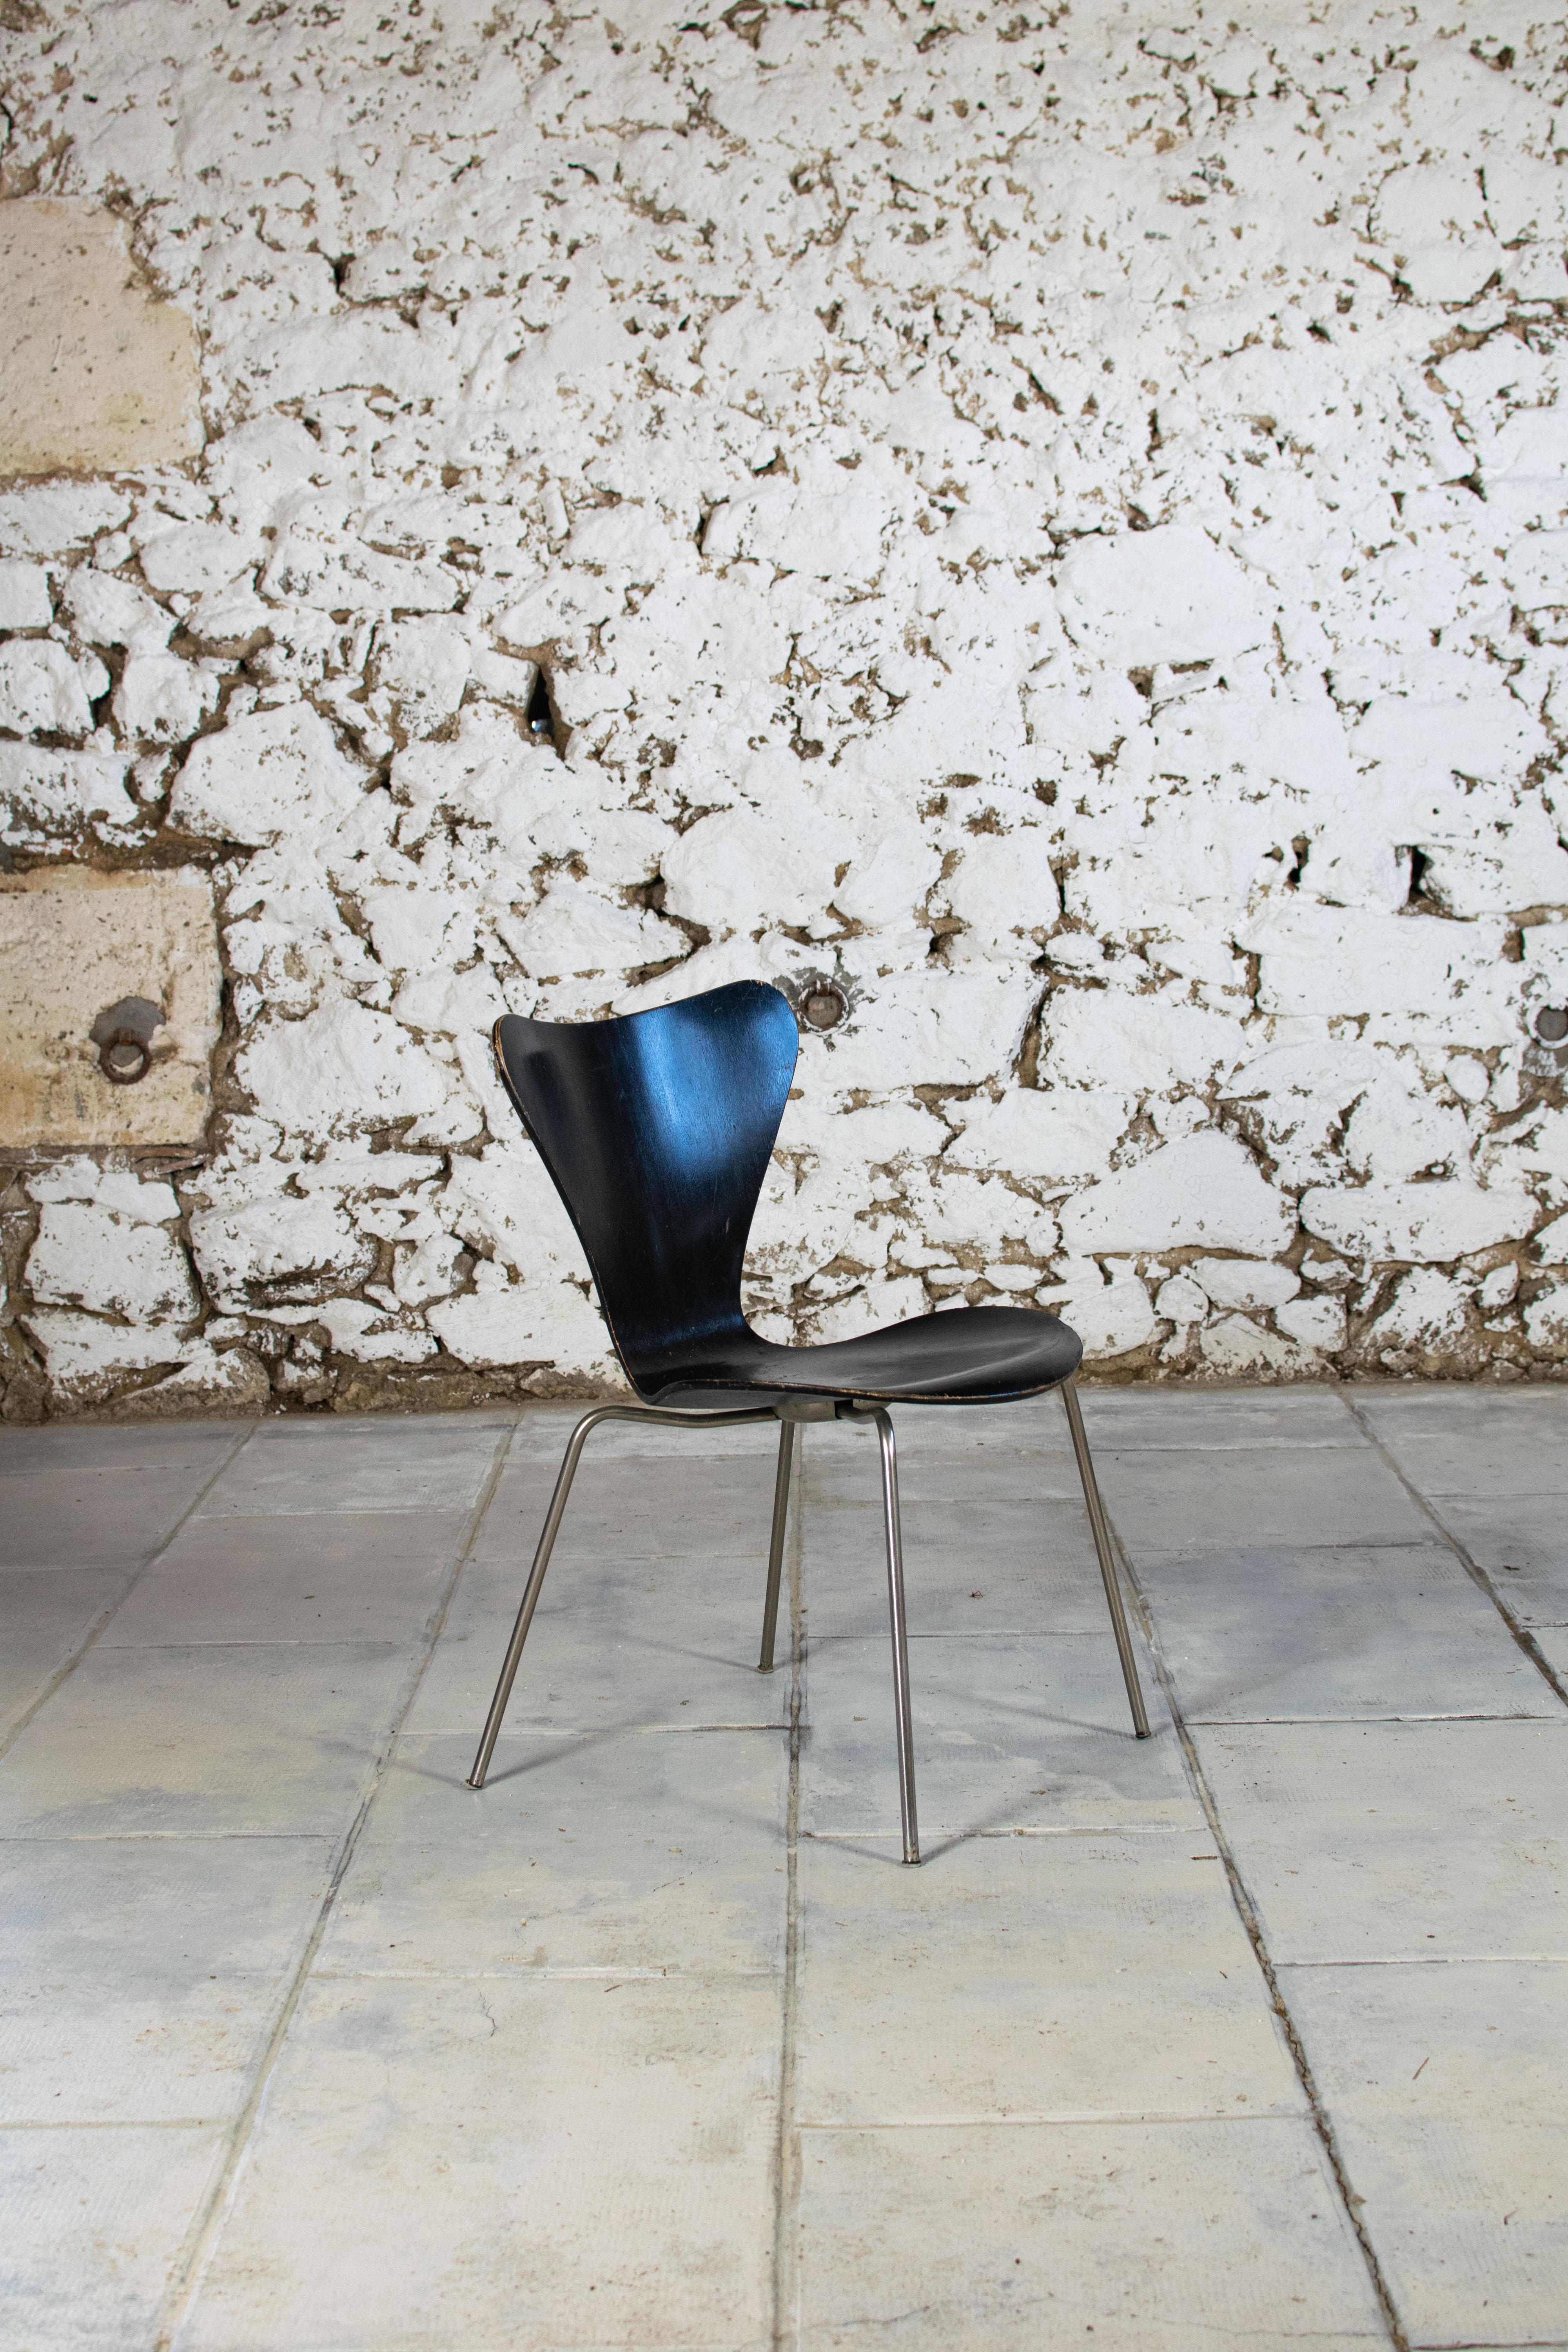 Grand classique du design la chaise Série 7 dessinée en 1955 par le designer danois Arne Jacobsen, est le best-seller de Fritz Hansen depuis des décennies. Ce modèle est l'aboutissement des recherches de Jacobsen sur les possibilité du bois courbé,